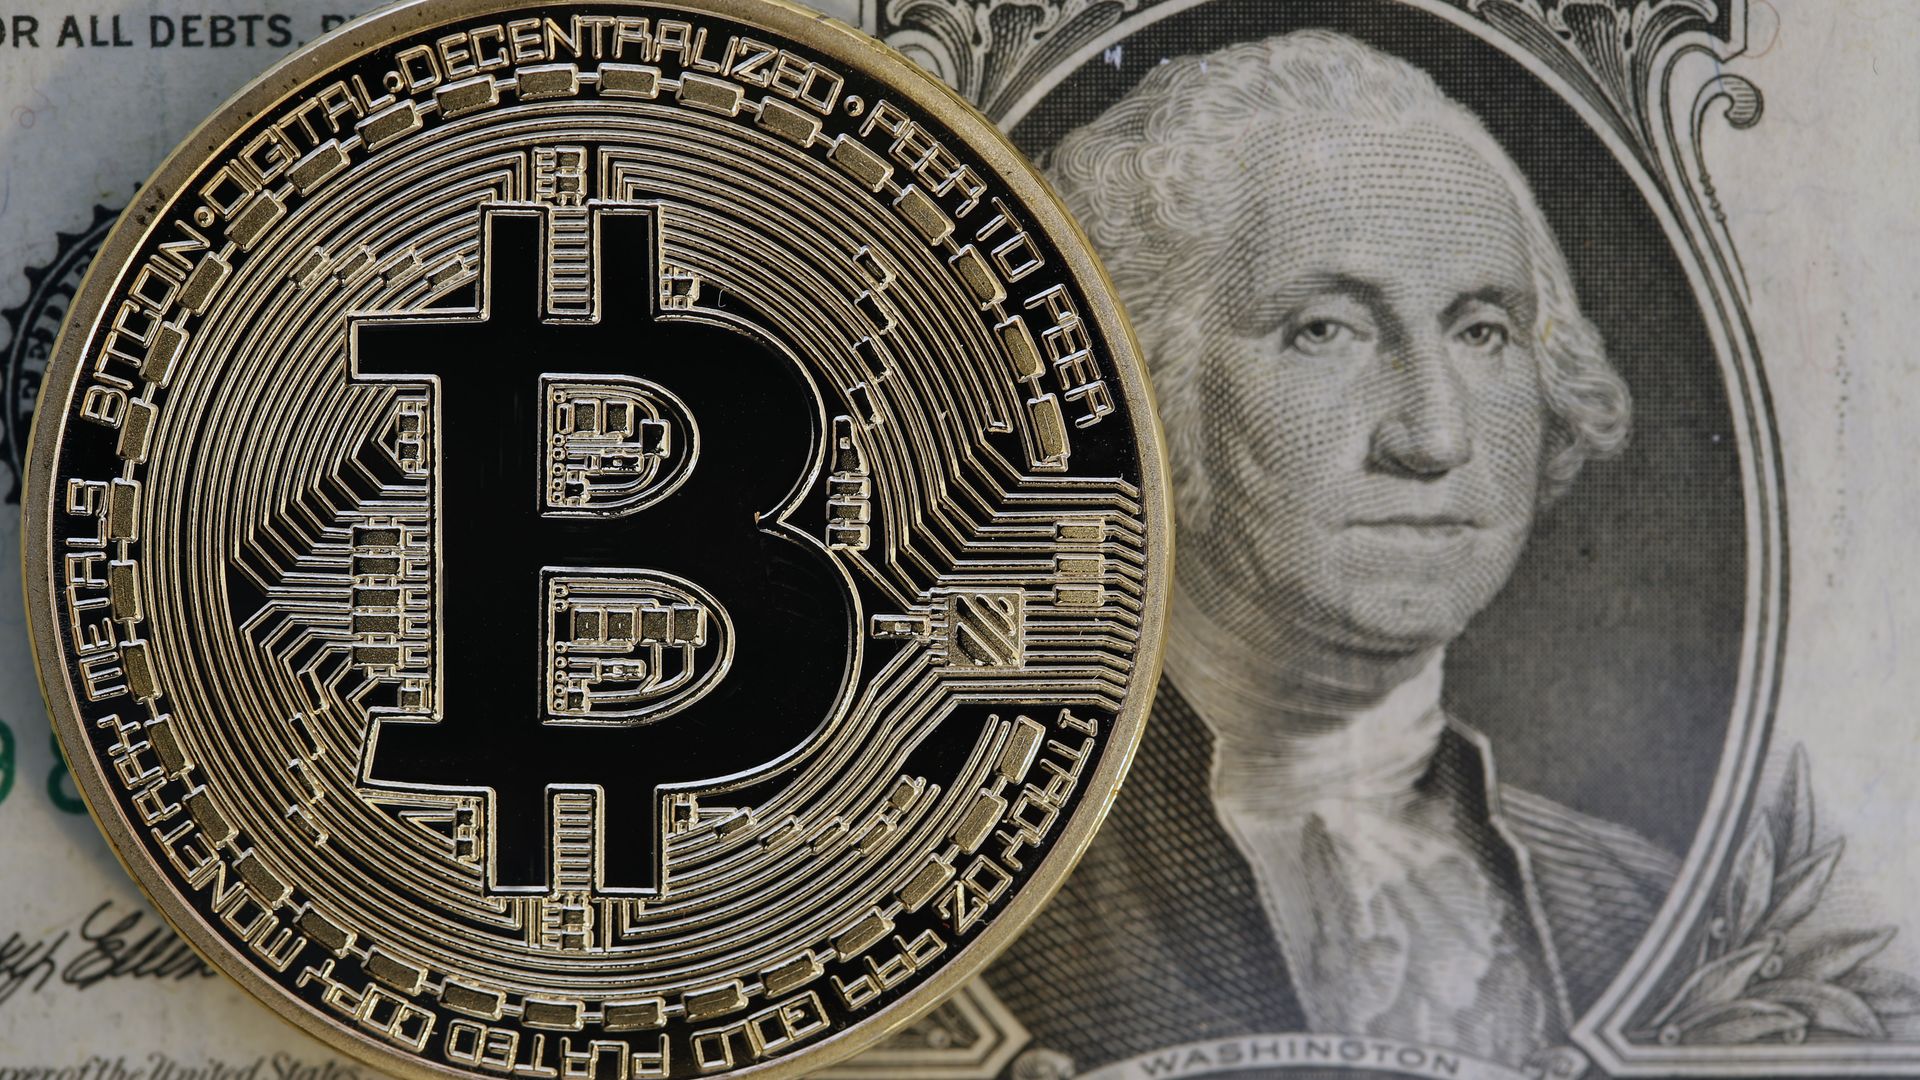 Bitcoin and a dollar bill